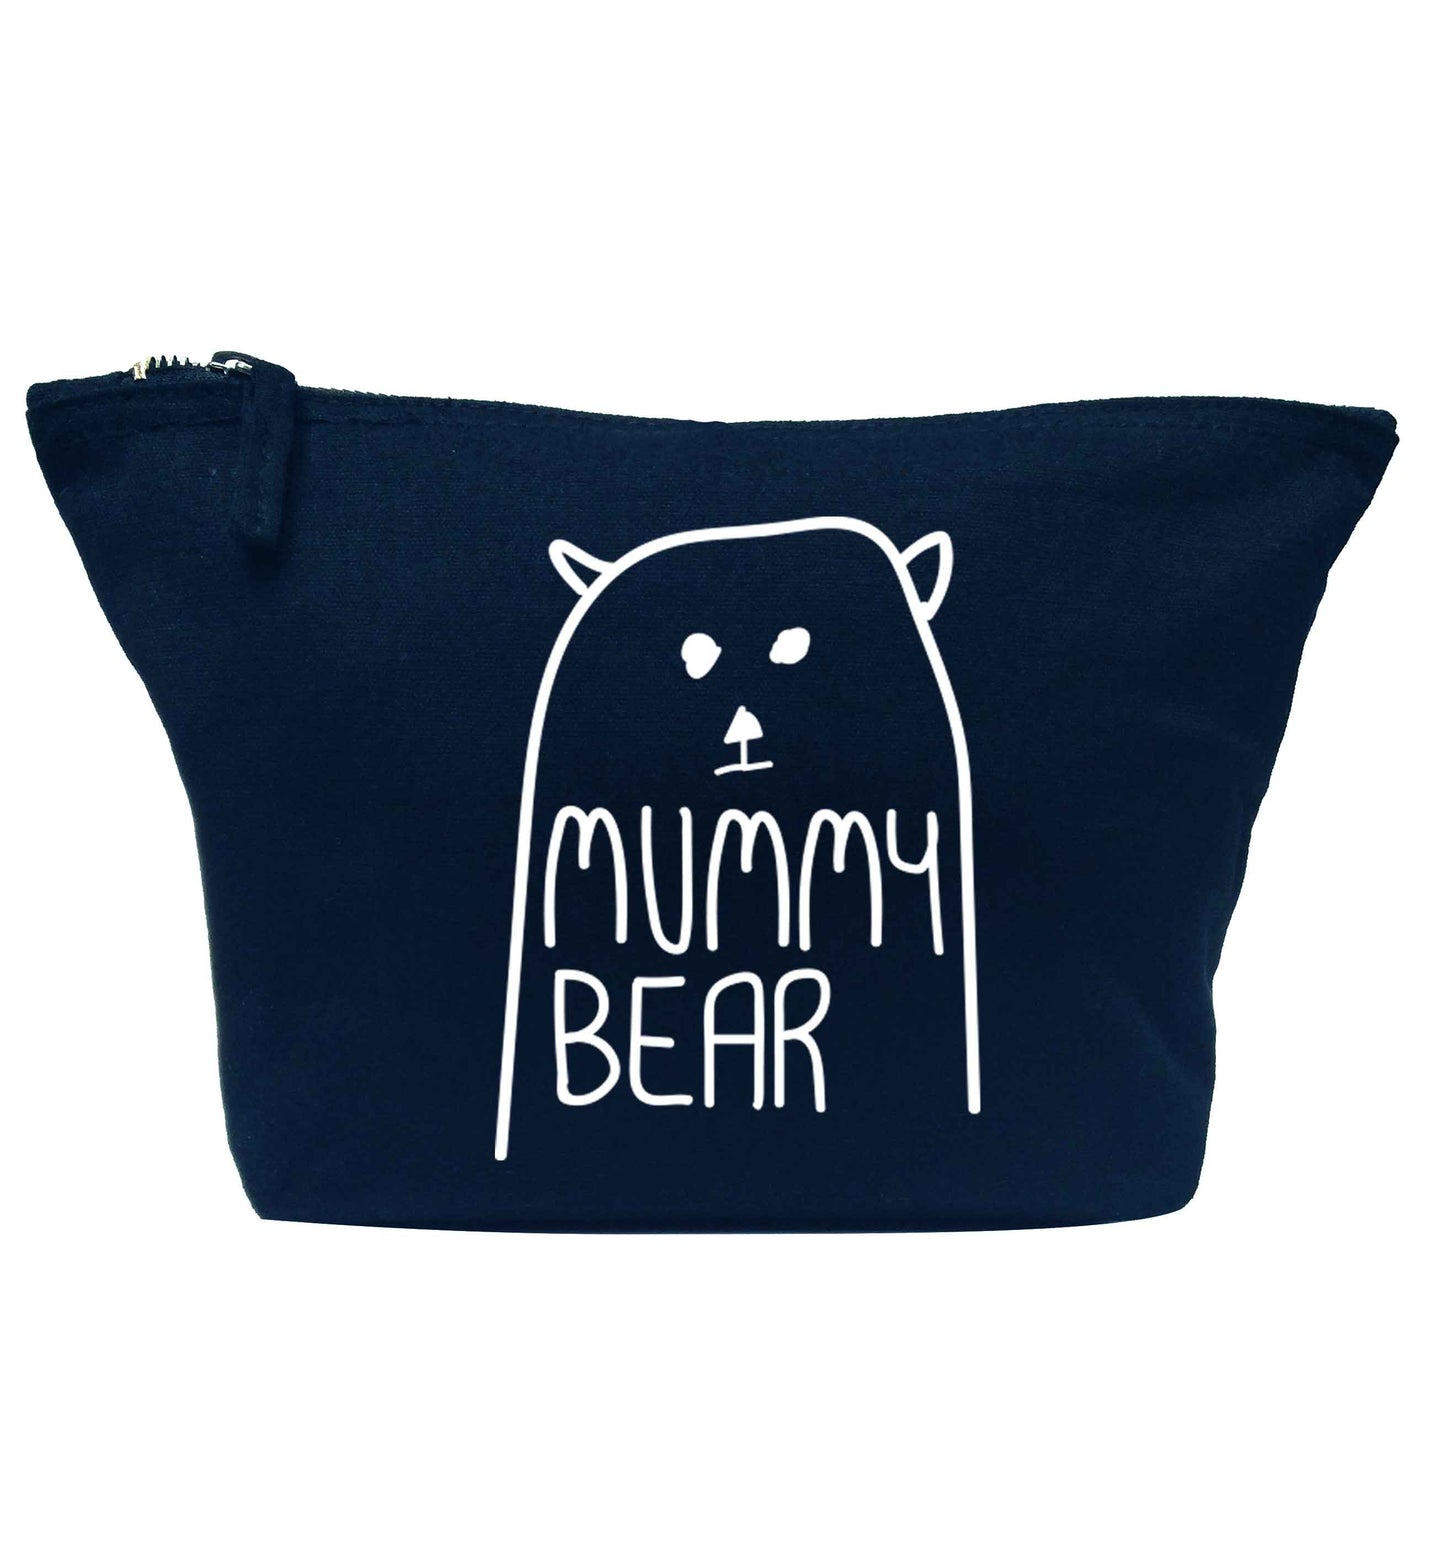 Mummy bear navy makeup bag